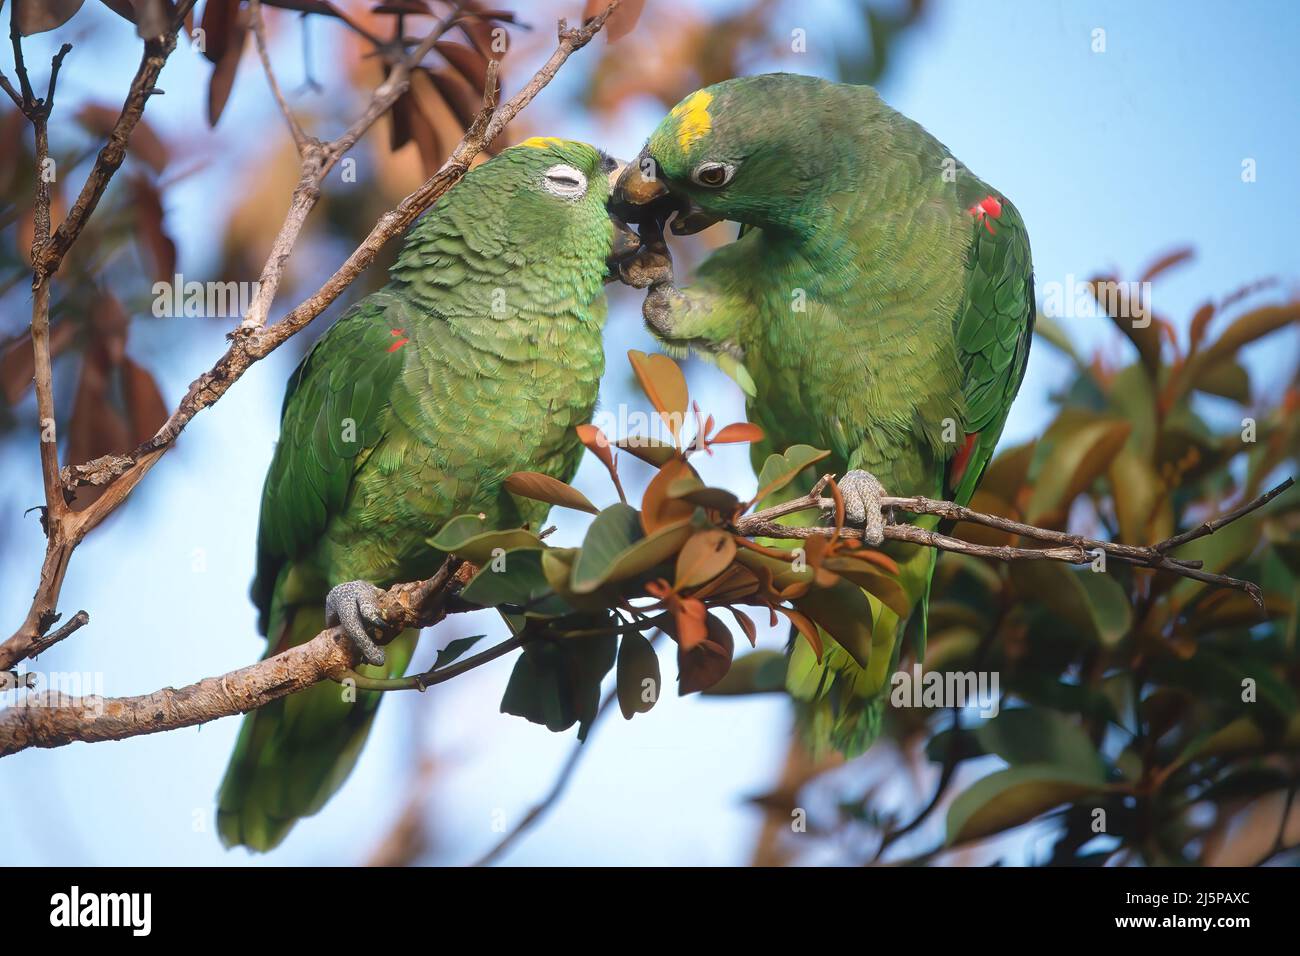 Two Yellow-headed Parrots (Amazona oratrix) in a tree, Gran Sabana, Venezuela Stock Photo